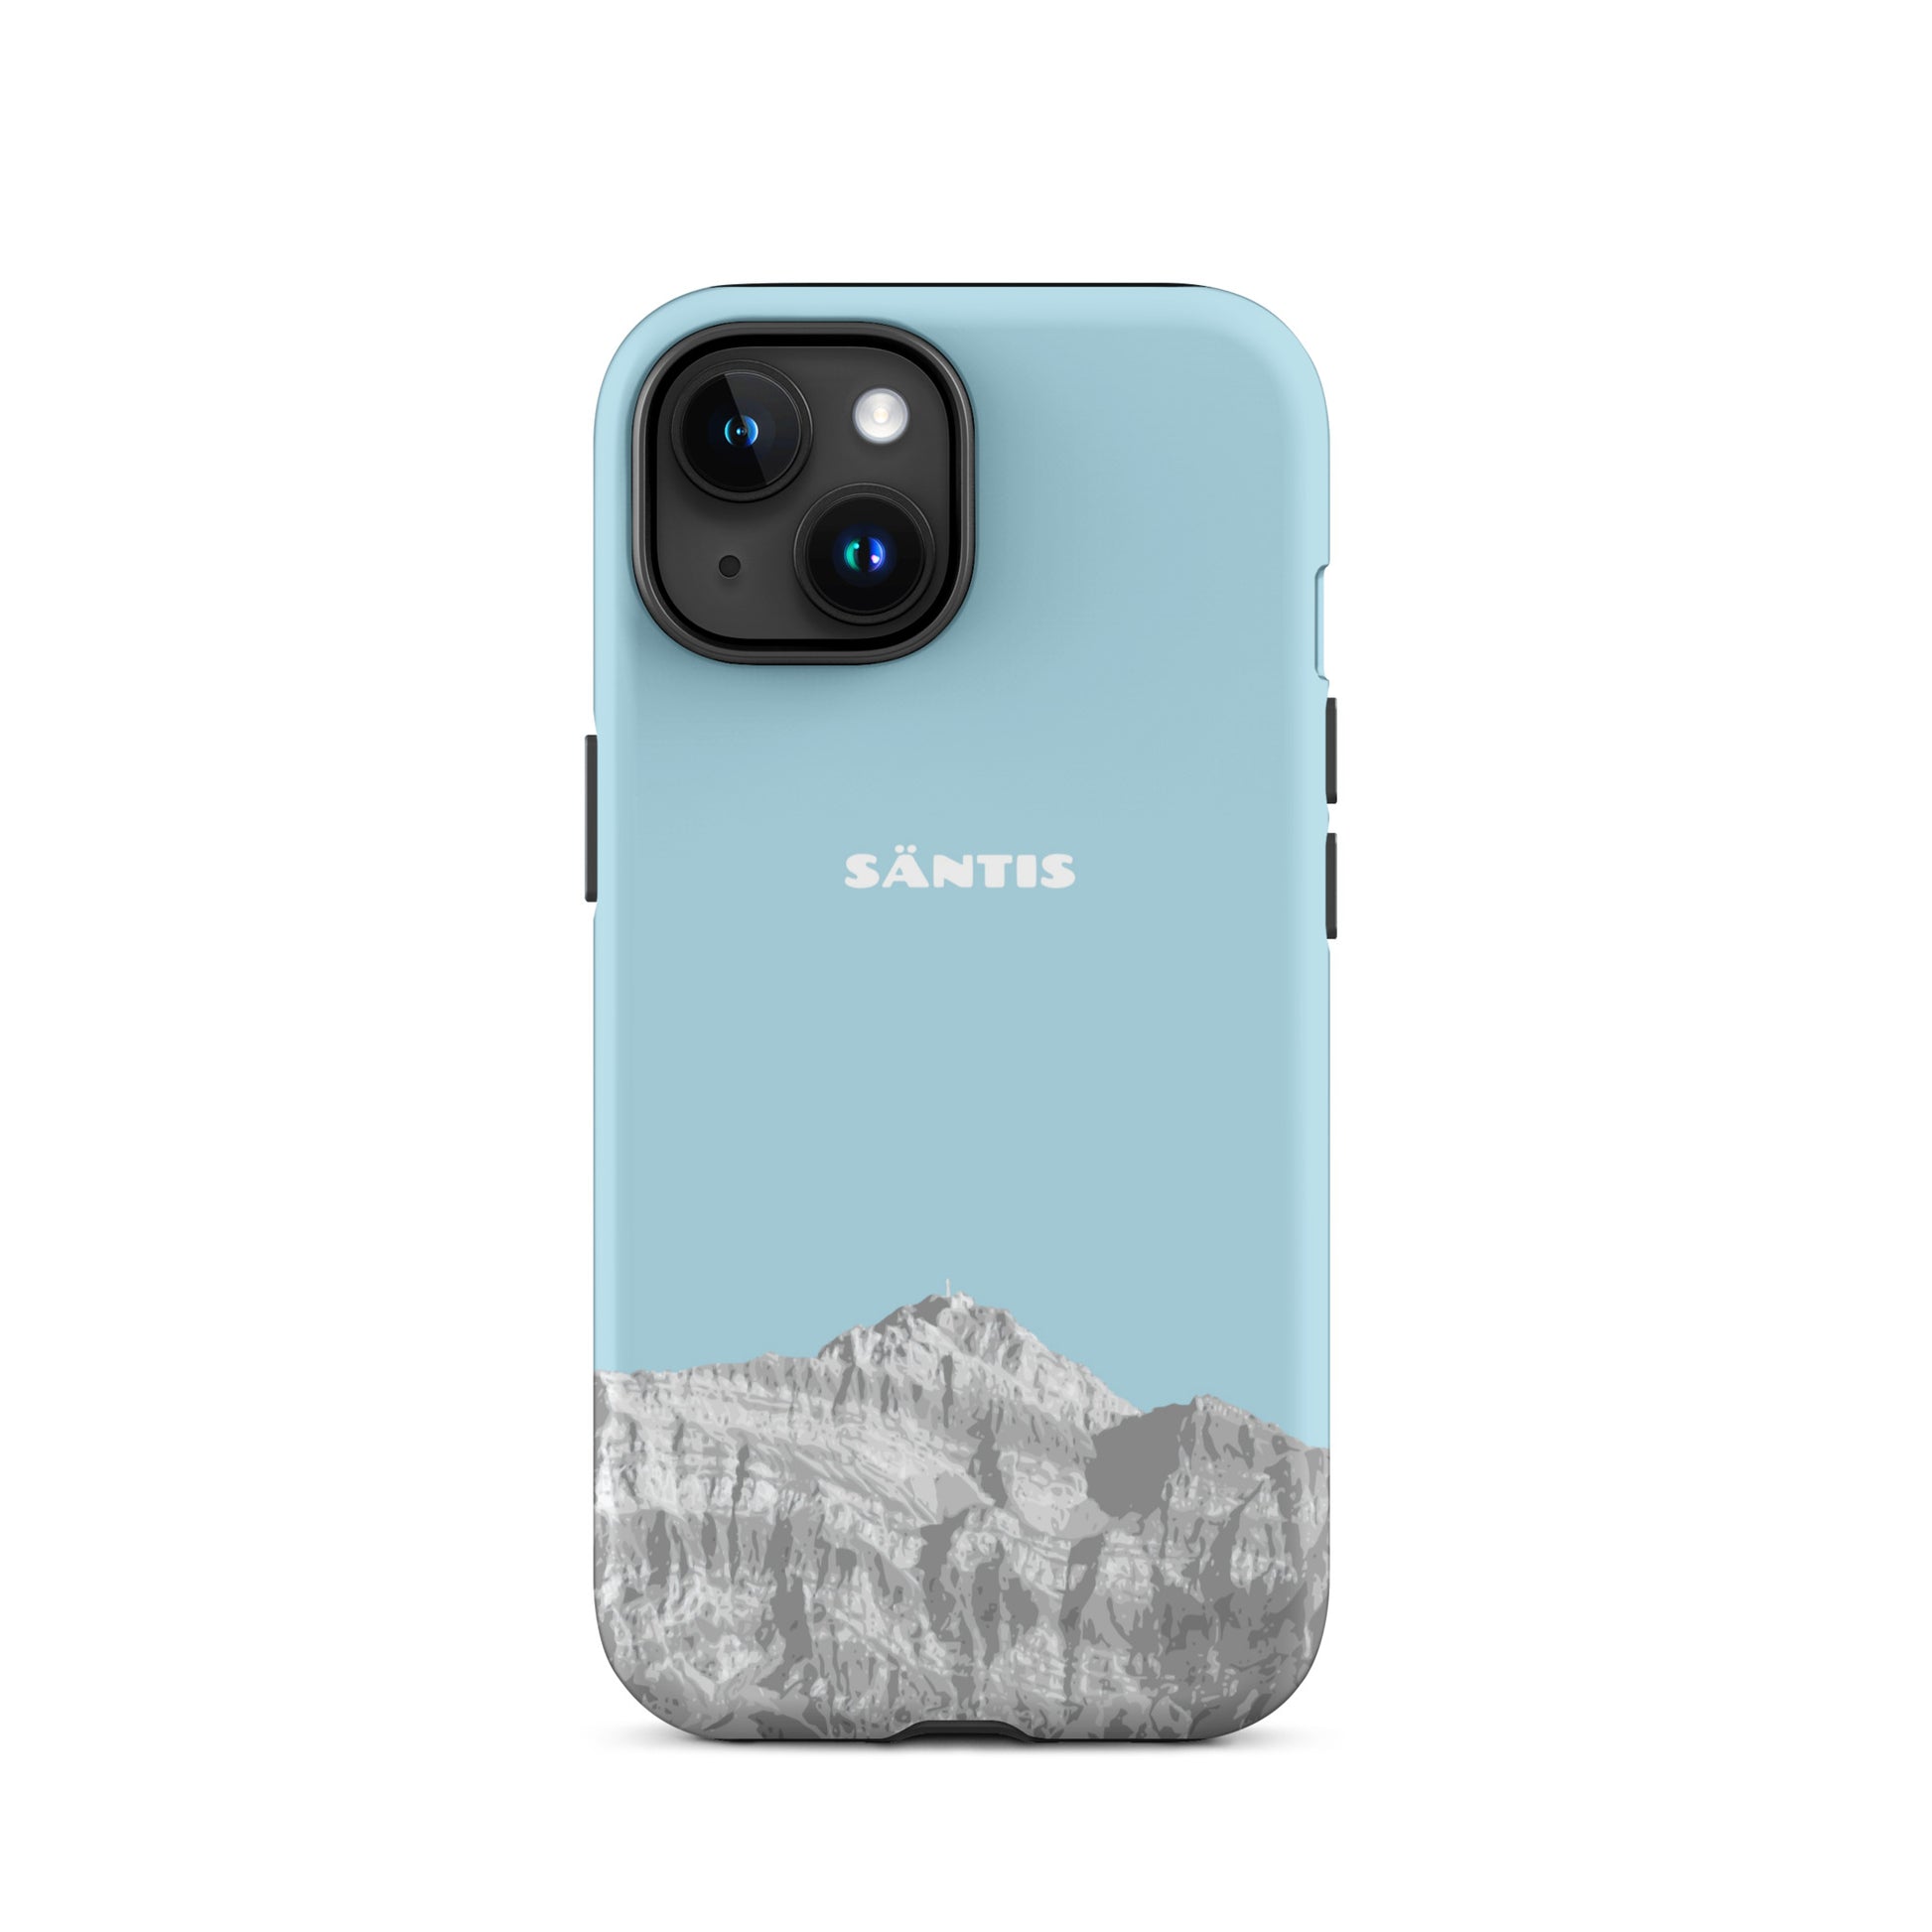 Hülle für das iPhone 15 von Apple in der Farbe Hellblau, dass den Säntis im Alpstein zeigt.